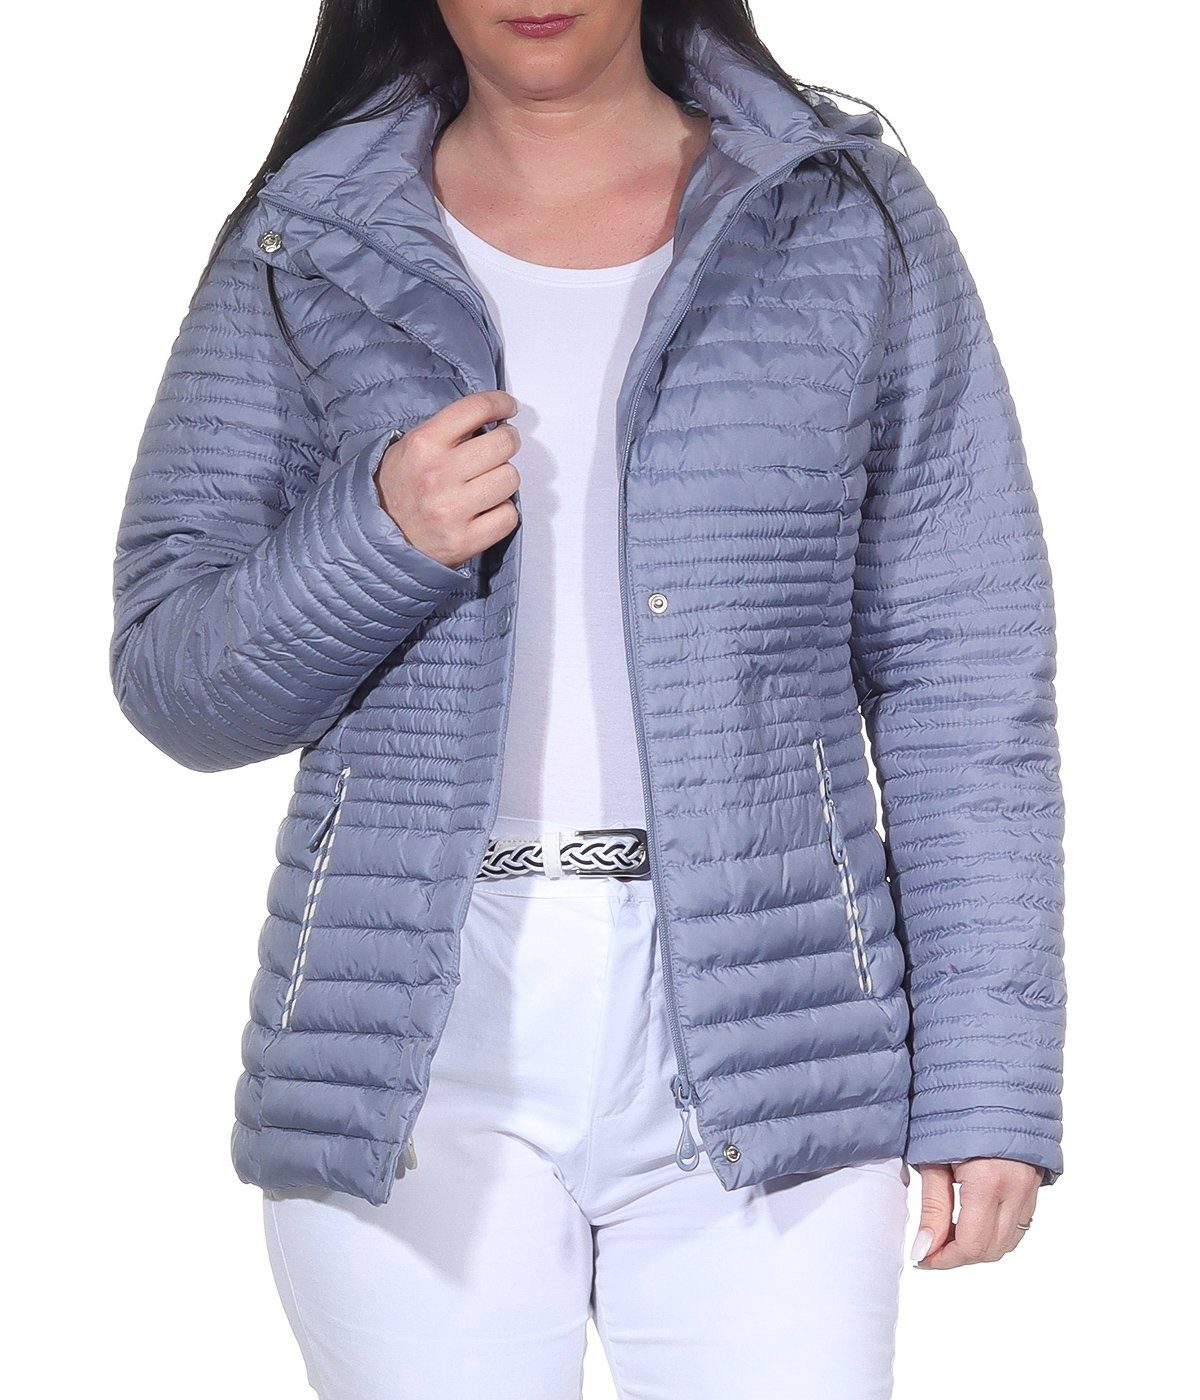 Aurela Damenmode Steppjacke Damen Sommerjacke leichte Outdoor Jacke auch in großen Größen erhältlich, angenehm leichte Übegrangsjacke Jeans